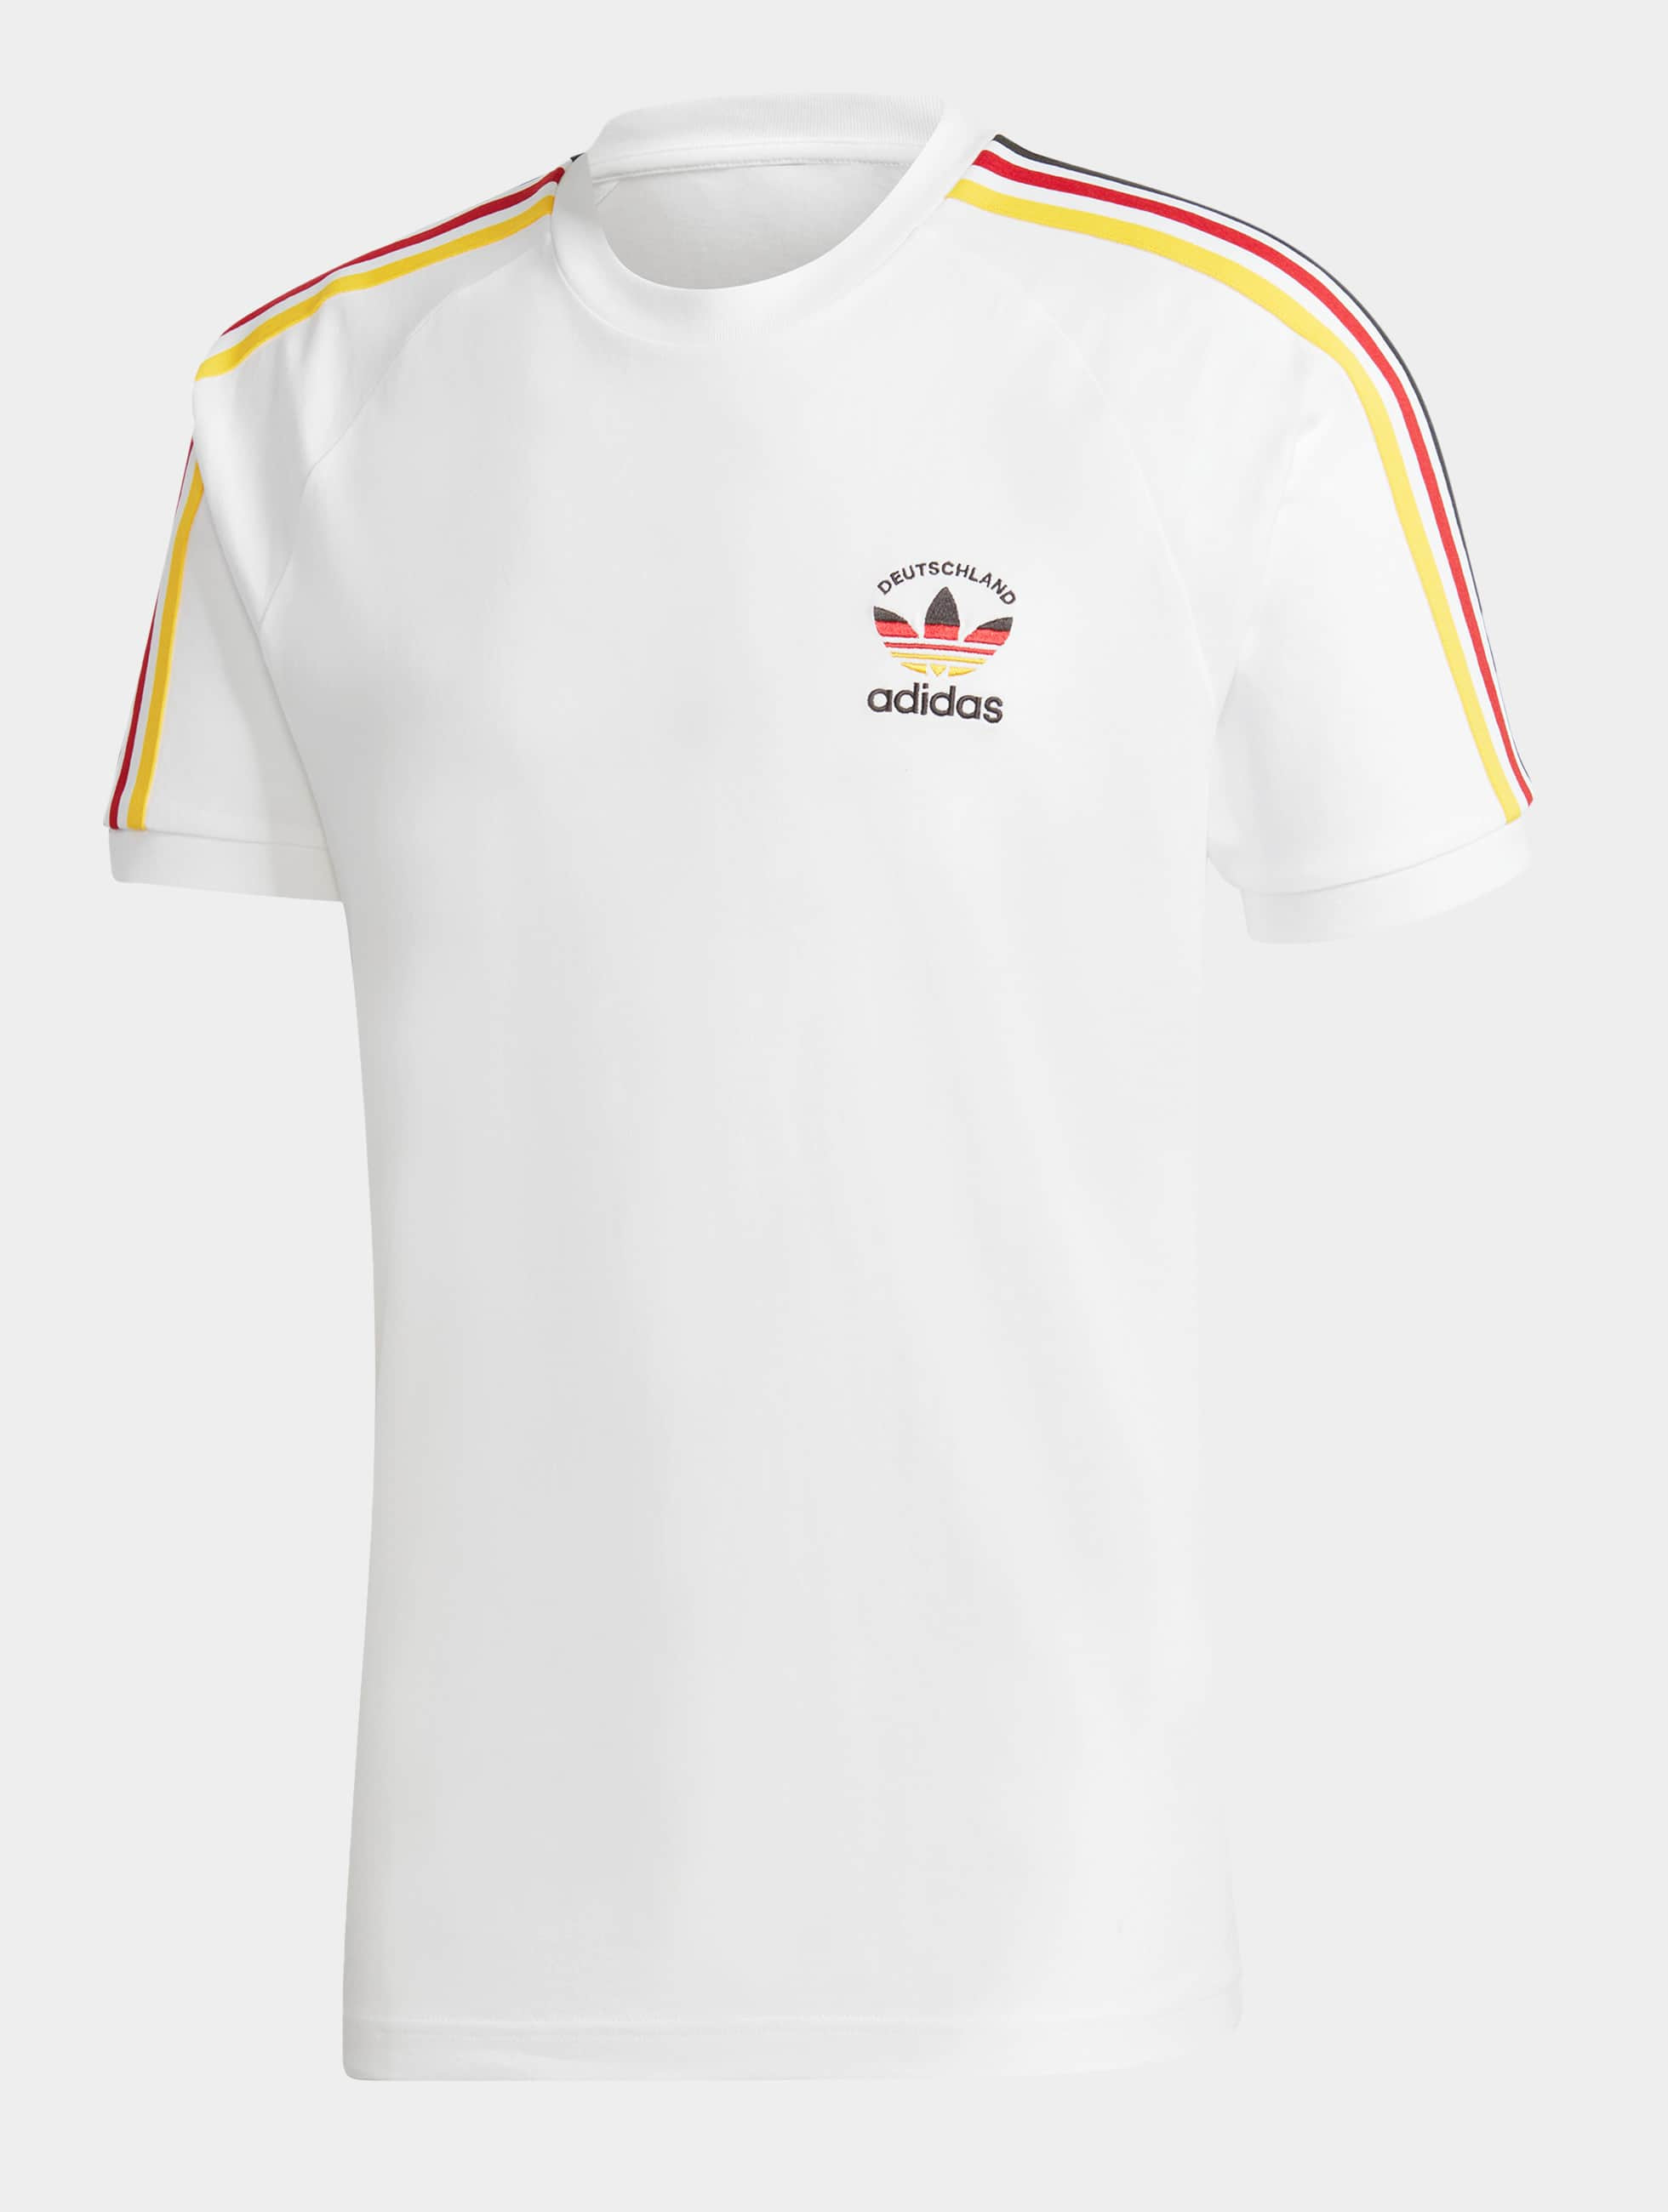 Långiver Karriere Forhandle adidas Originals Herren T-Shirt Originals 3 Stripes in weiß 1041095